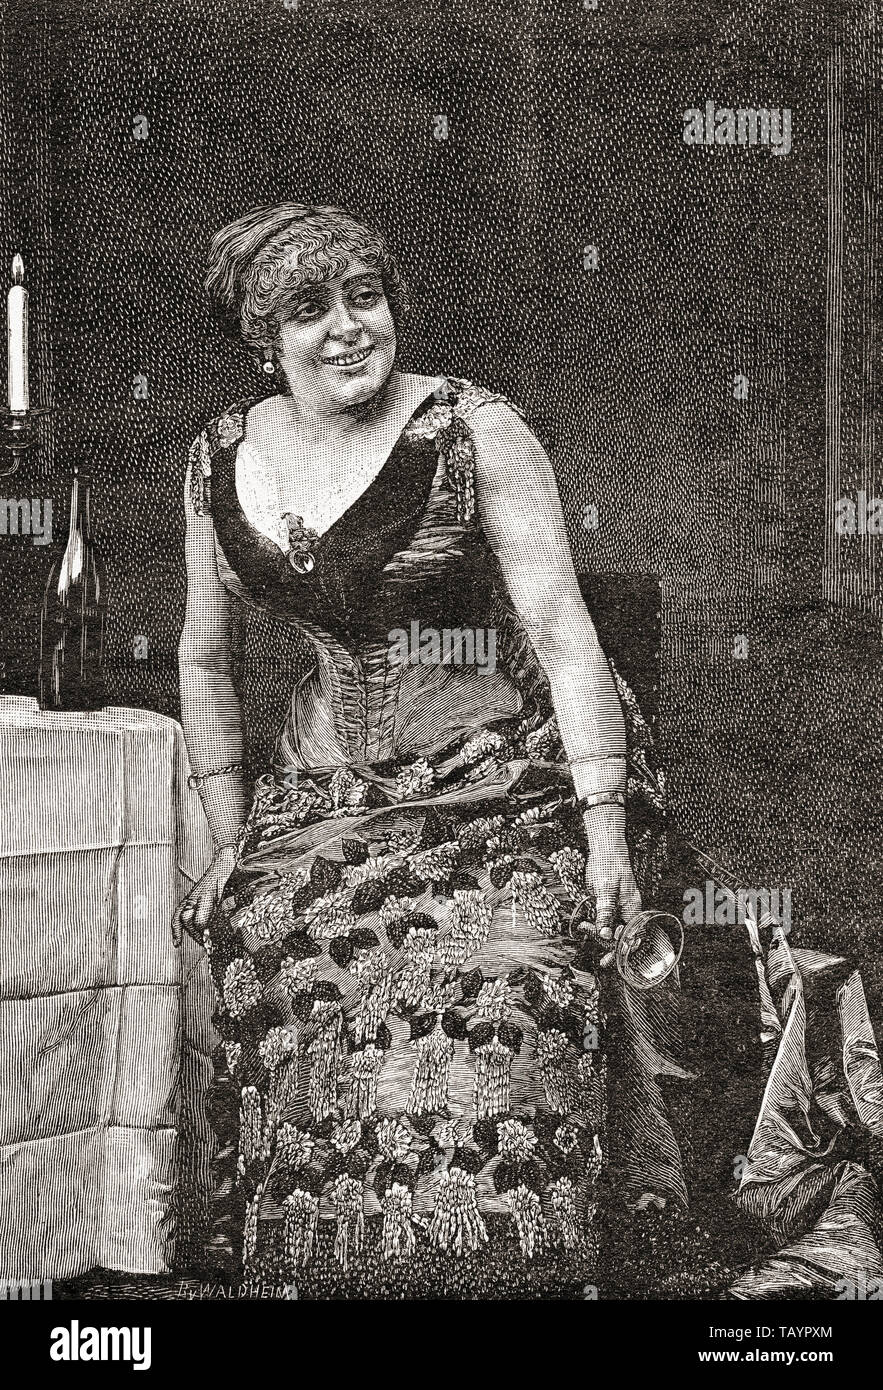 Anna Maria Luisa Damiens, fase di nome Anna Judic, 1849 -1911. Francese attrice comica. Da La Ilustracion Iberica, pubblicato nel 1884. Foto Stock